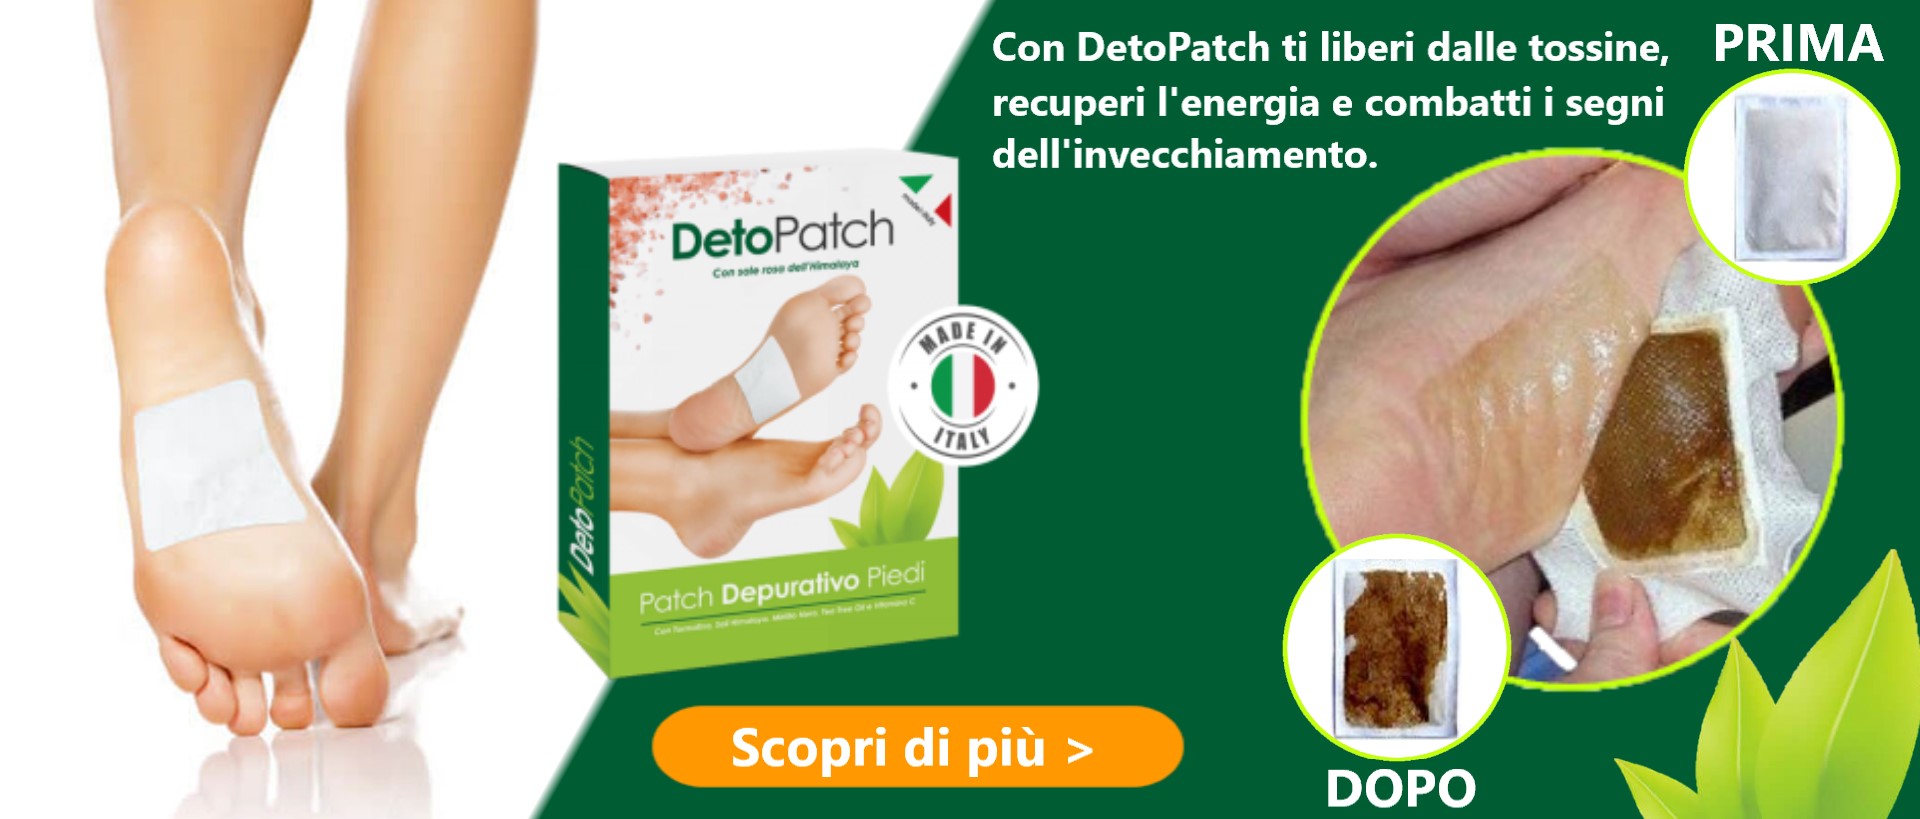 DetoPatch promo 3x1